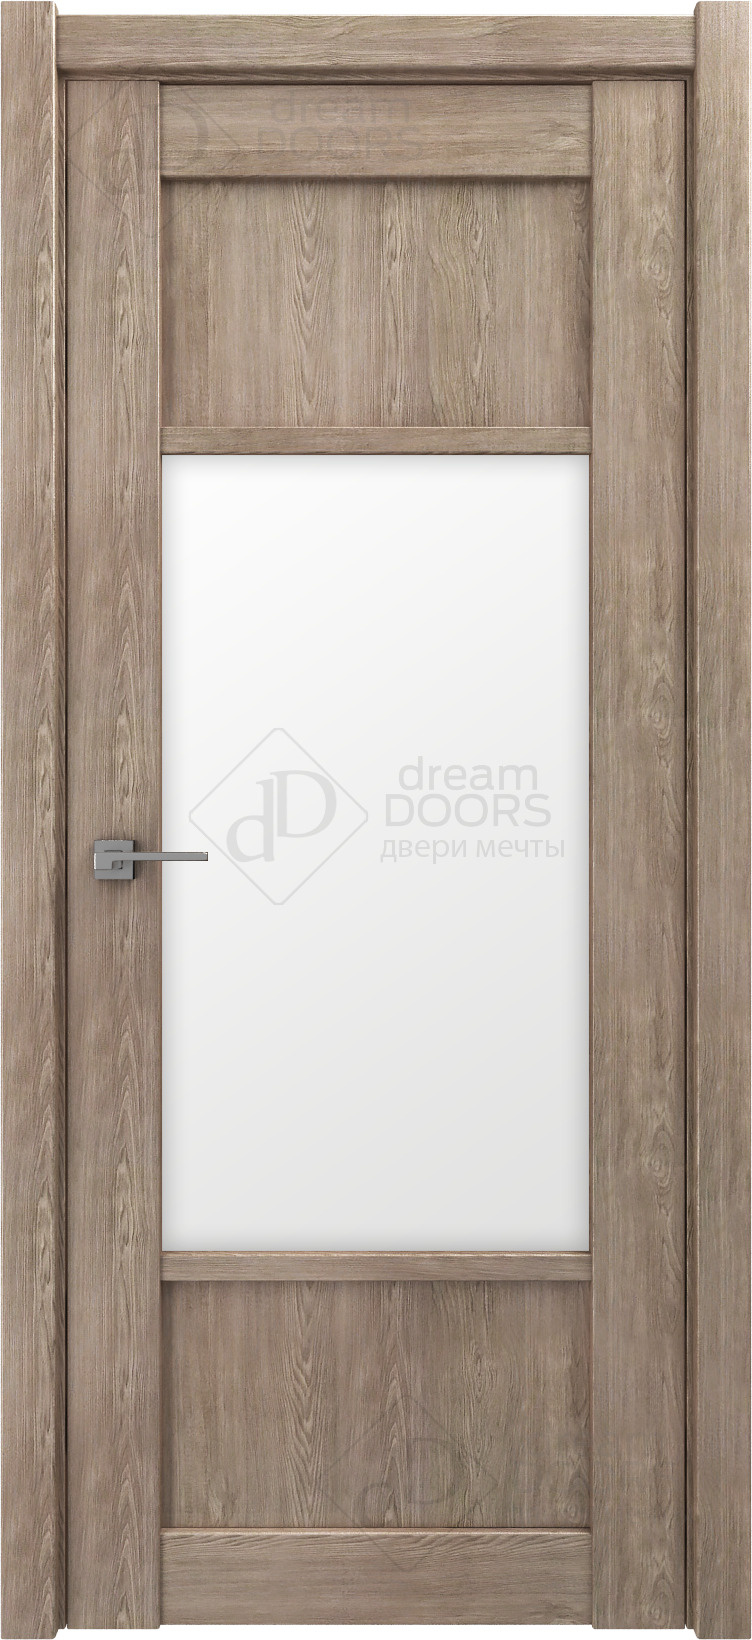 Dream Doors Межкомнатная дверь V26, арт. 18243 - фото №1